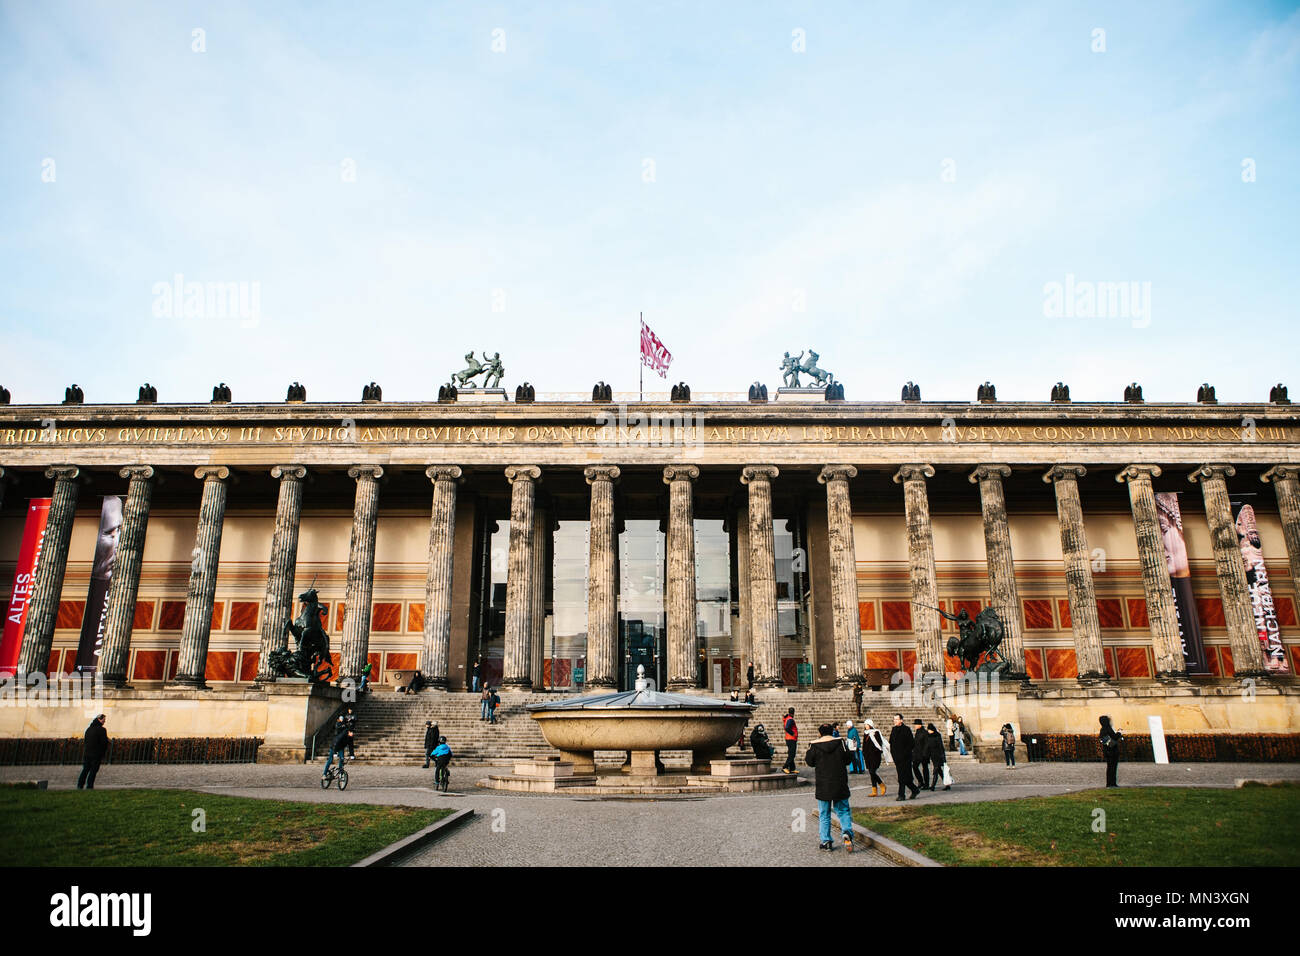 Berlin, Deutschland, 15. Februar 2018: Altes Museum oder Altes Museum. Kunst Museum in Berlin auf der Museumsinsel neoklassischen Baustil. Stockfoto